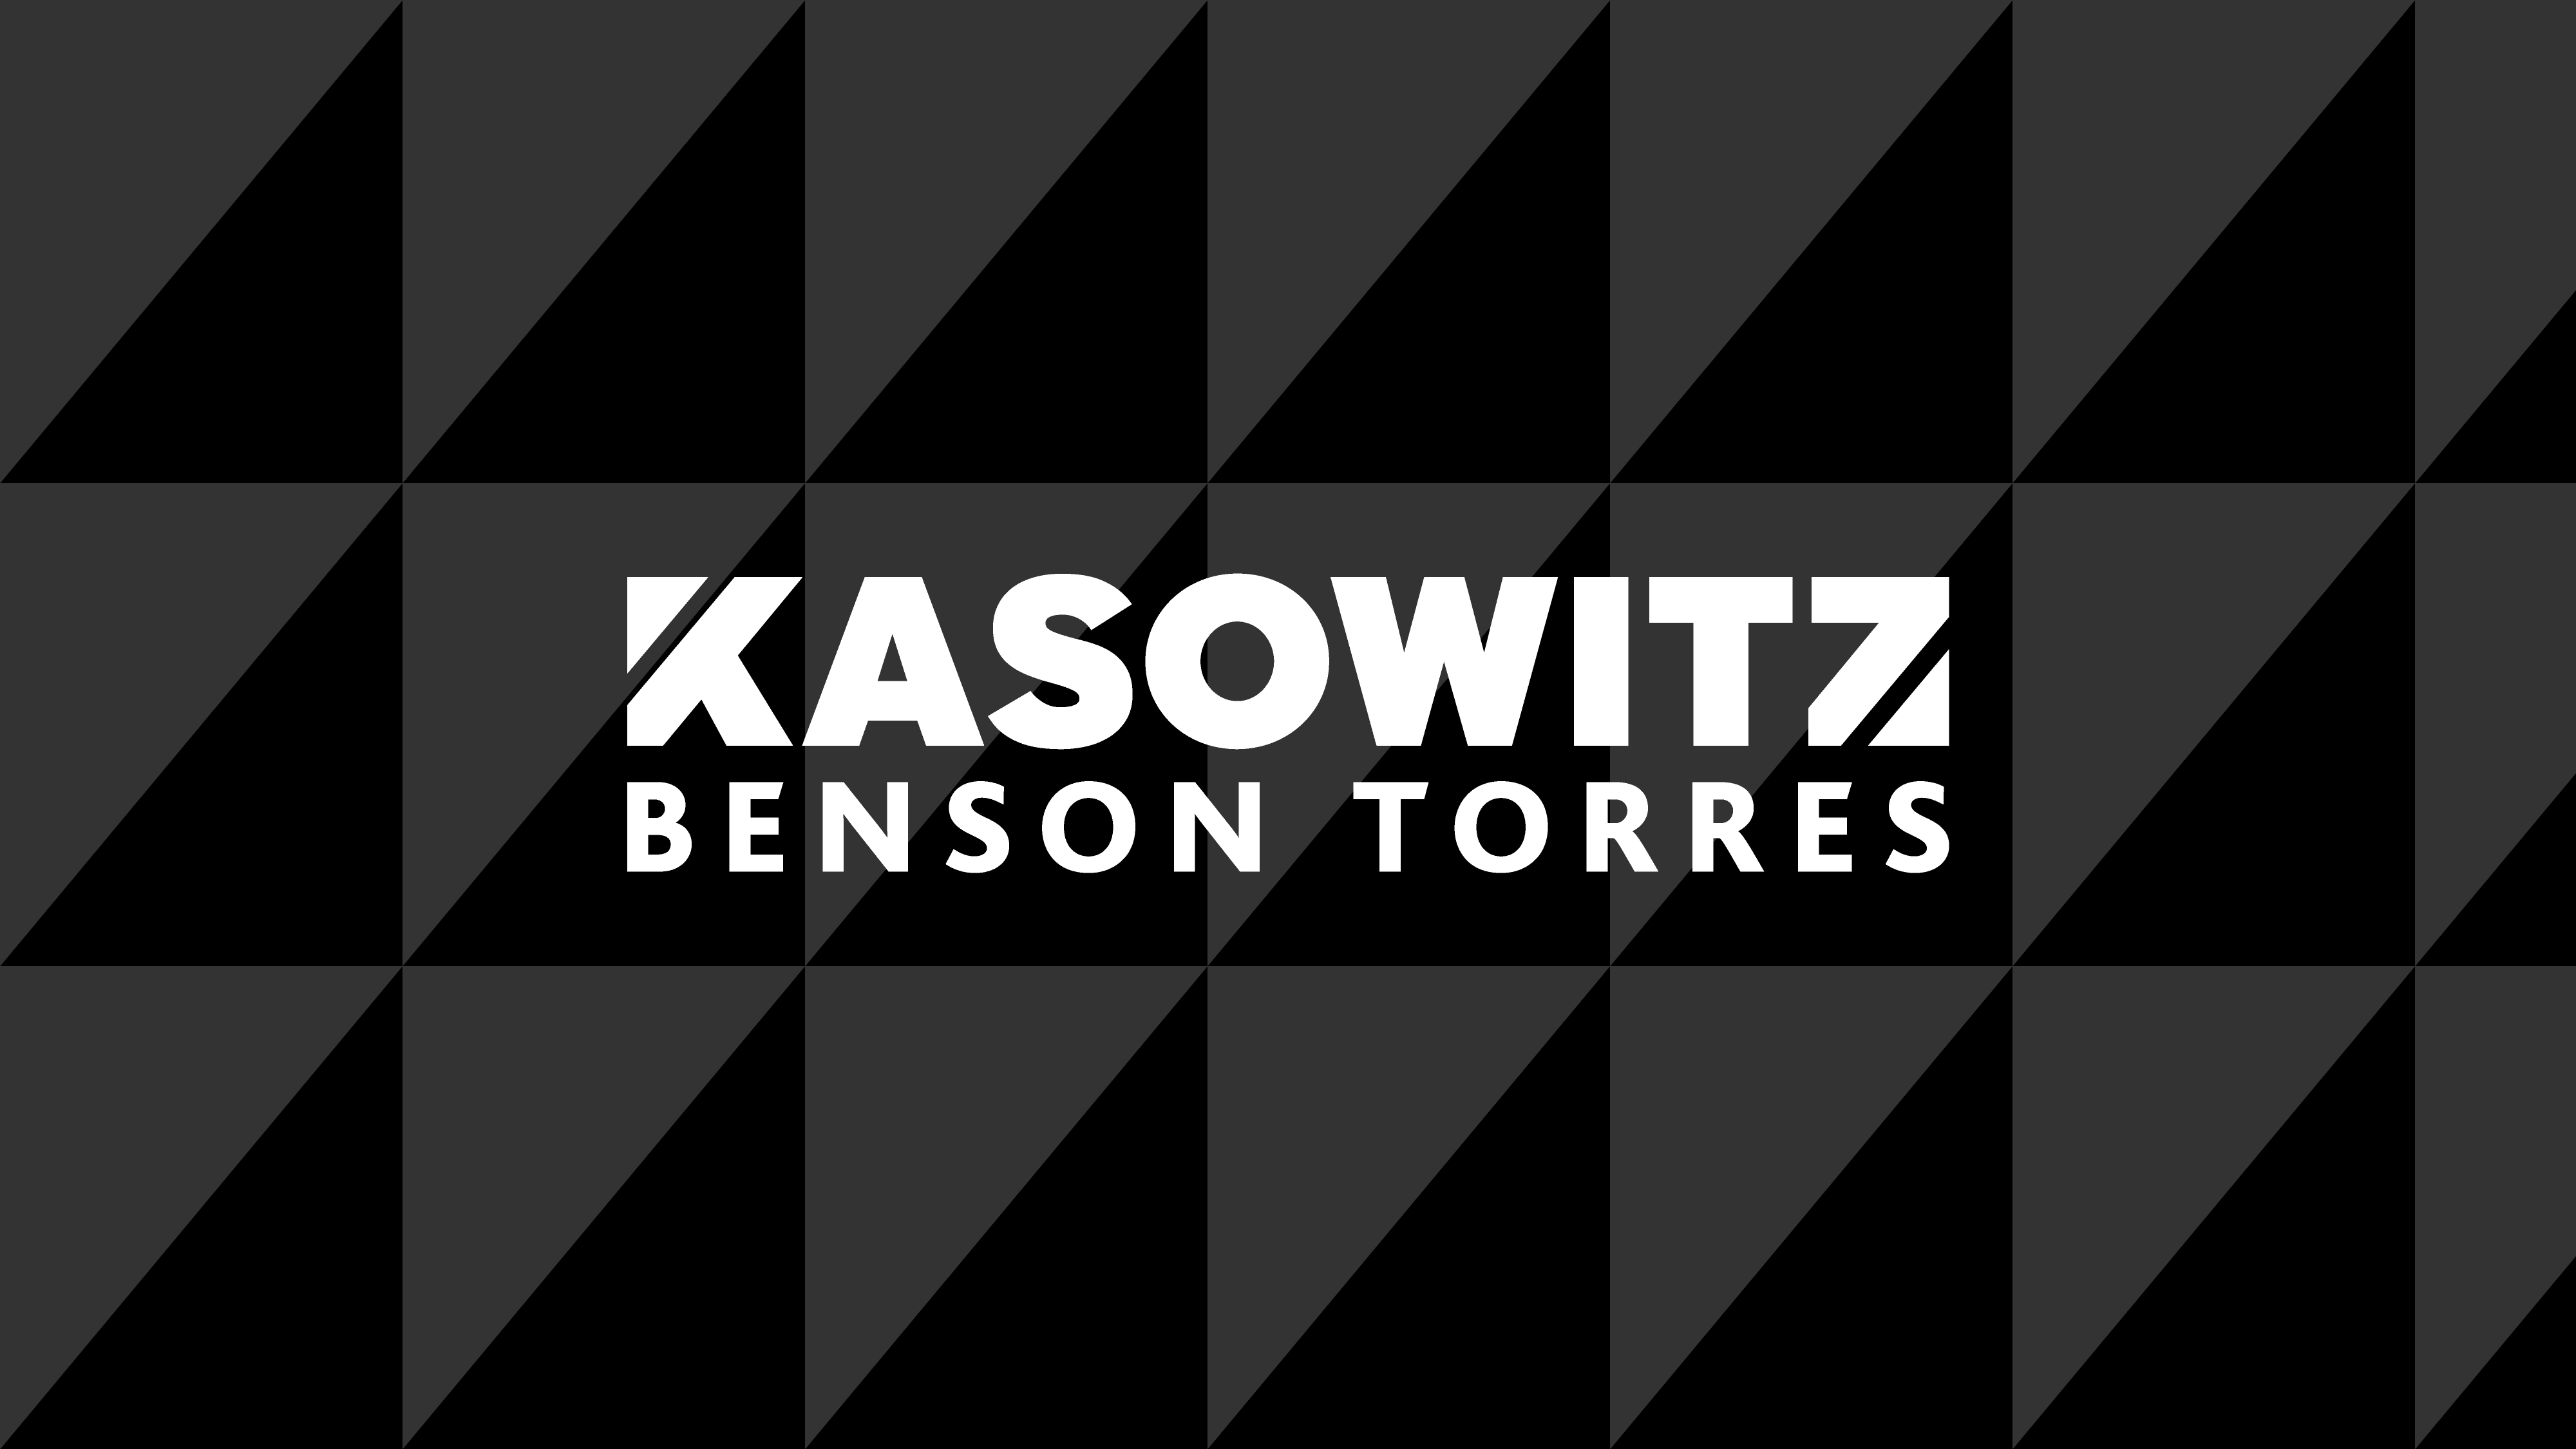 Kasowitz Benson Torres Hosts Puerto Rico Relief Fundraiser at The Copacabana